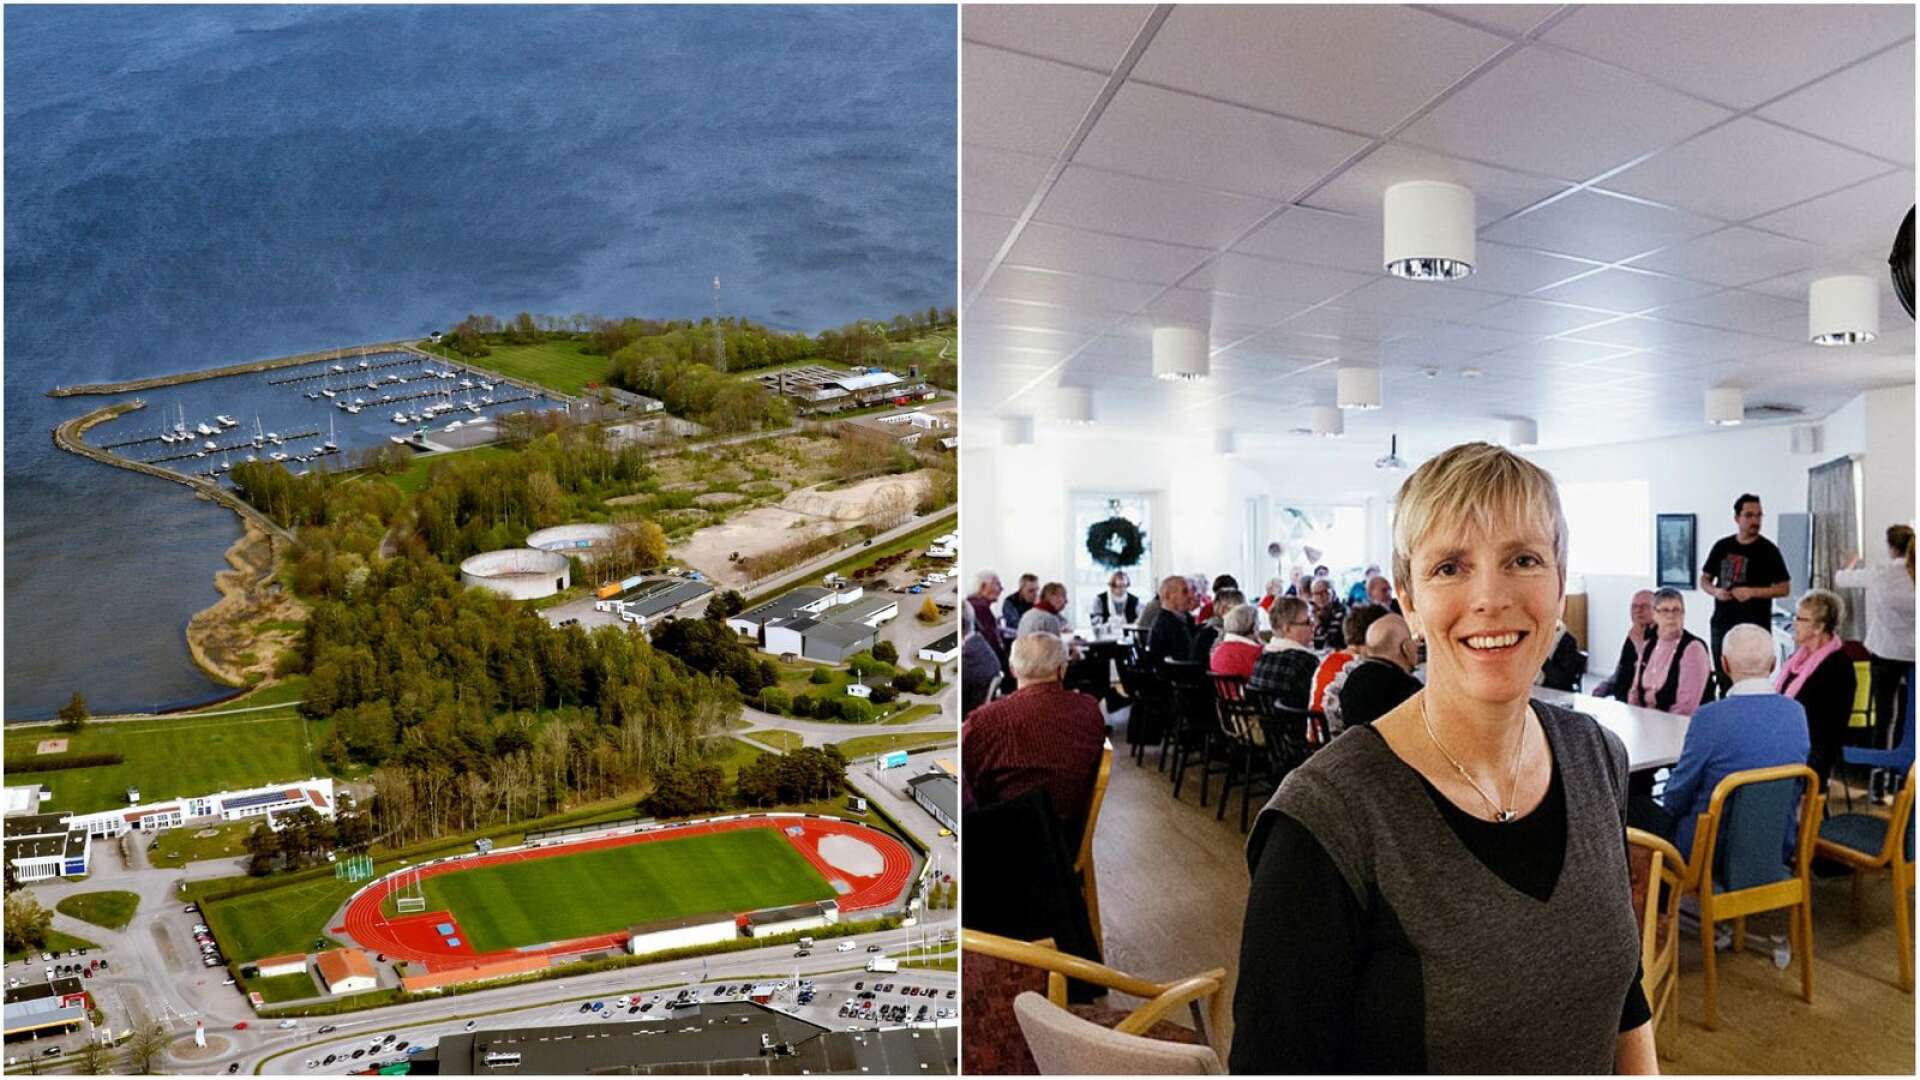 Arbetet med detaljplaner i Lidköping har tagit ordentlig fart.Tora Gustafsson trafik- och planchef leder arbetet. I framtiden väntar planläggning av Framnäs idrottsplats som politiken vill flytta till Ågården till förmån för bostäder.